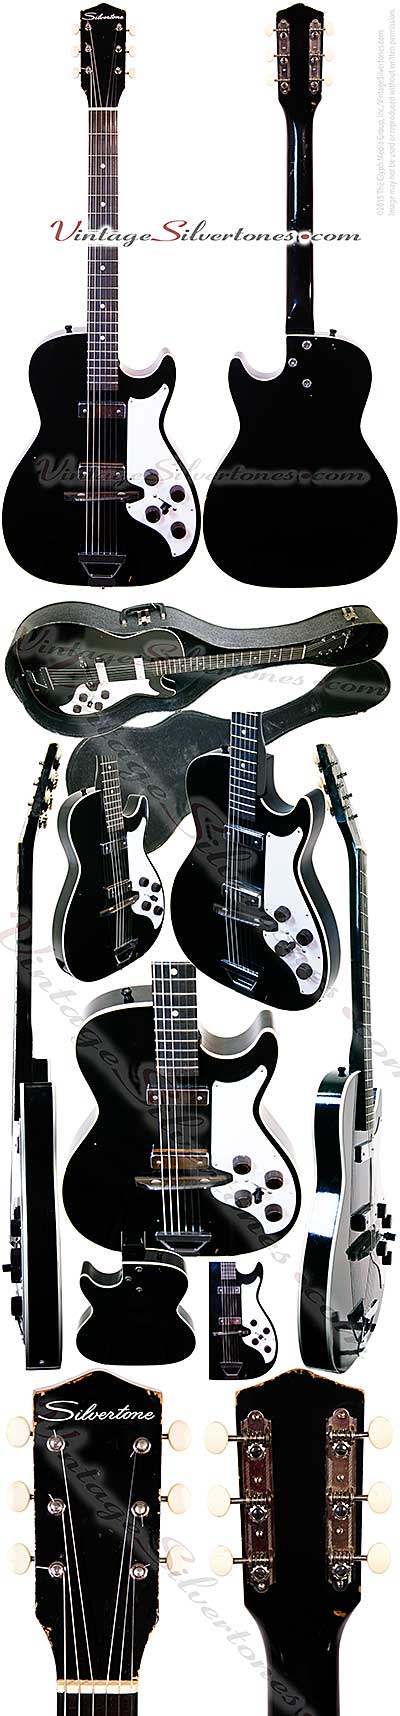 Silvertone 1420L - Harmony Stratotone - 2 pickup, black hollow body electric guitar made in Chicago IL USA circa 1961